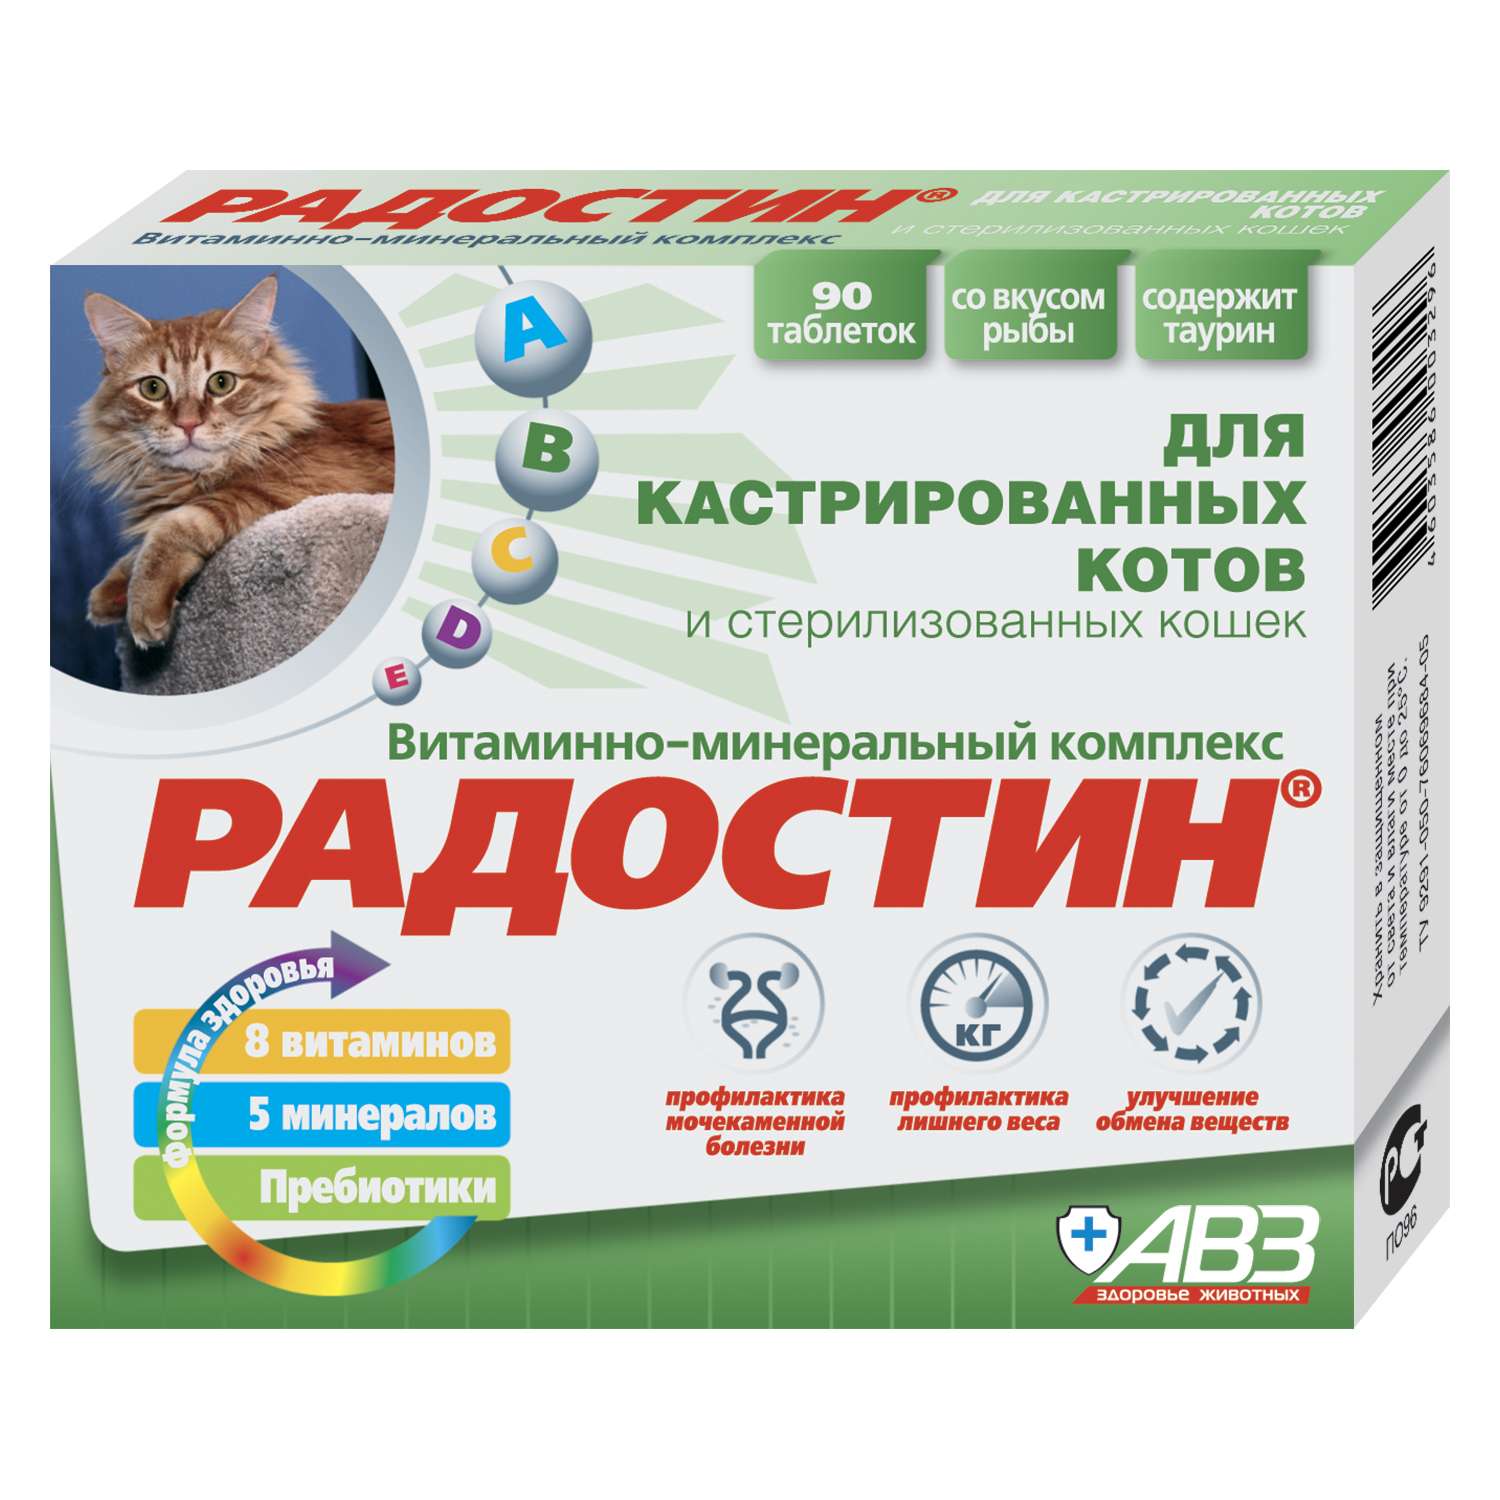 Пищевая добавка для котов Радостин кастрированных витаминно-минеральная 90таблеток - фото 1